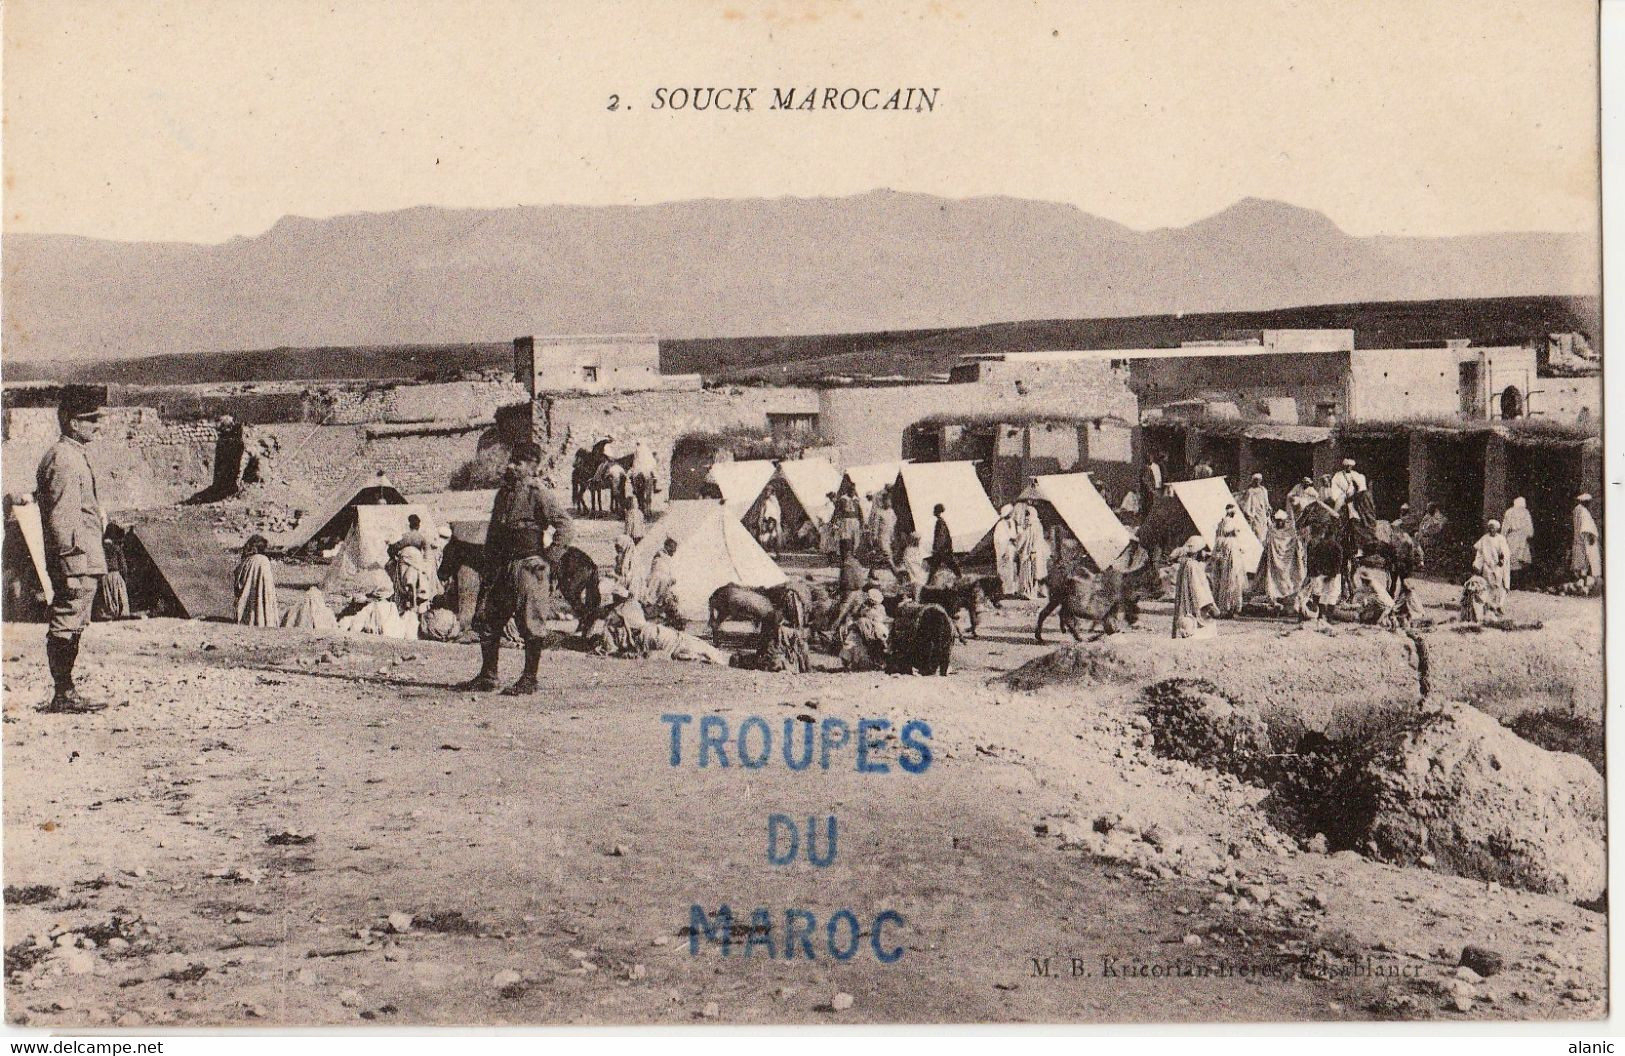 Militaria-TROUPE DU MAROC  Souck Marocain. A Voyagé  18 Février 1916. F. M.  Animée, PEU CONNUE Pli En Bas à Droite - Other Wars